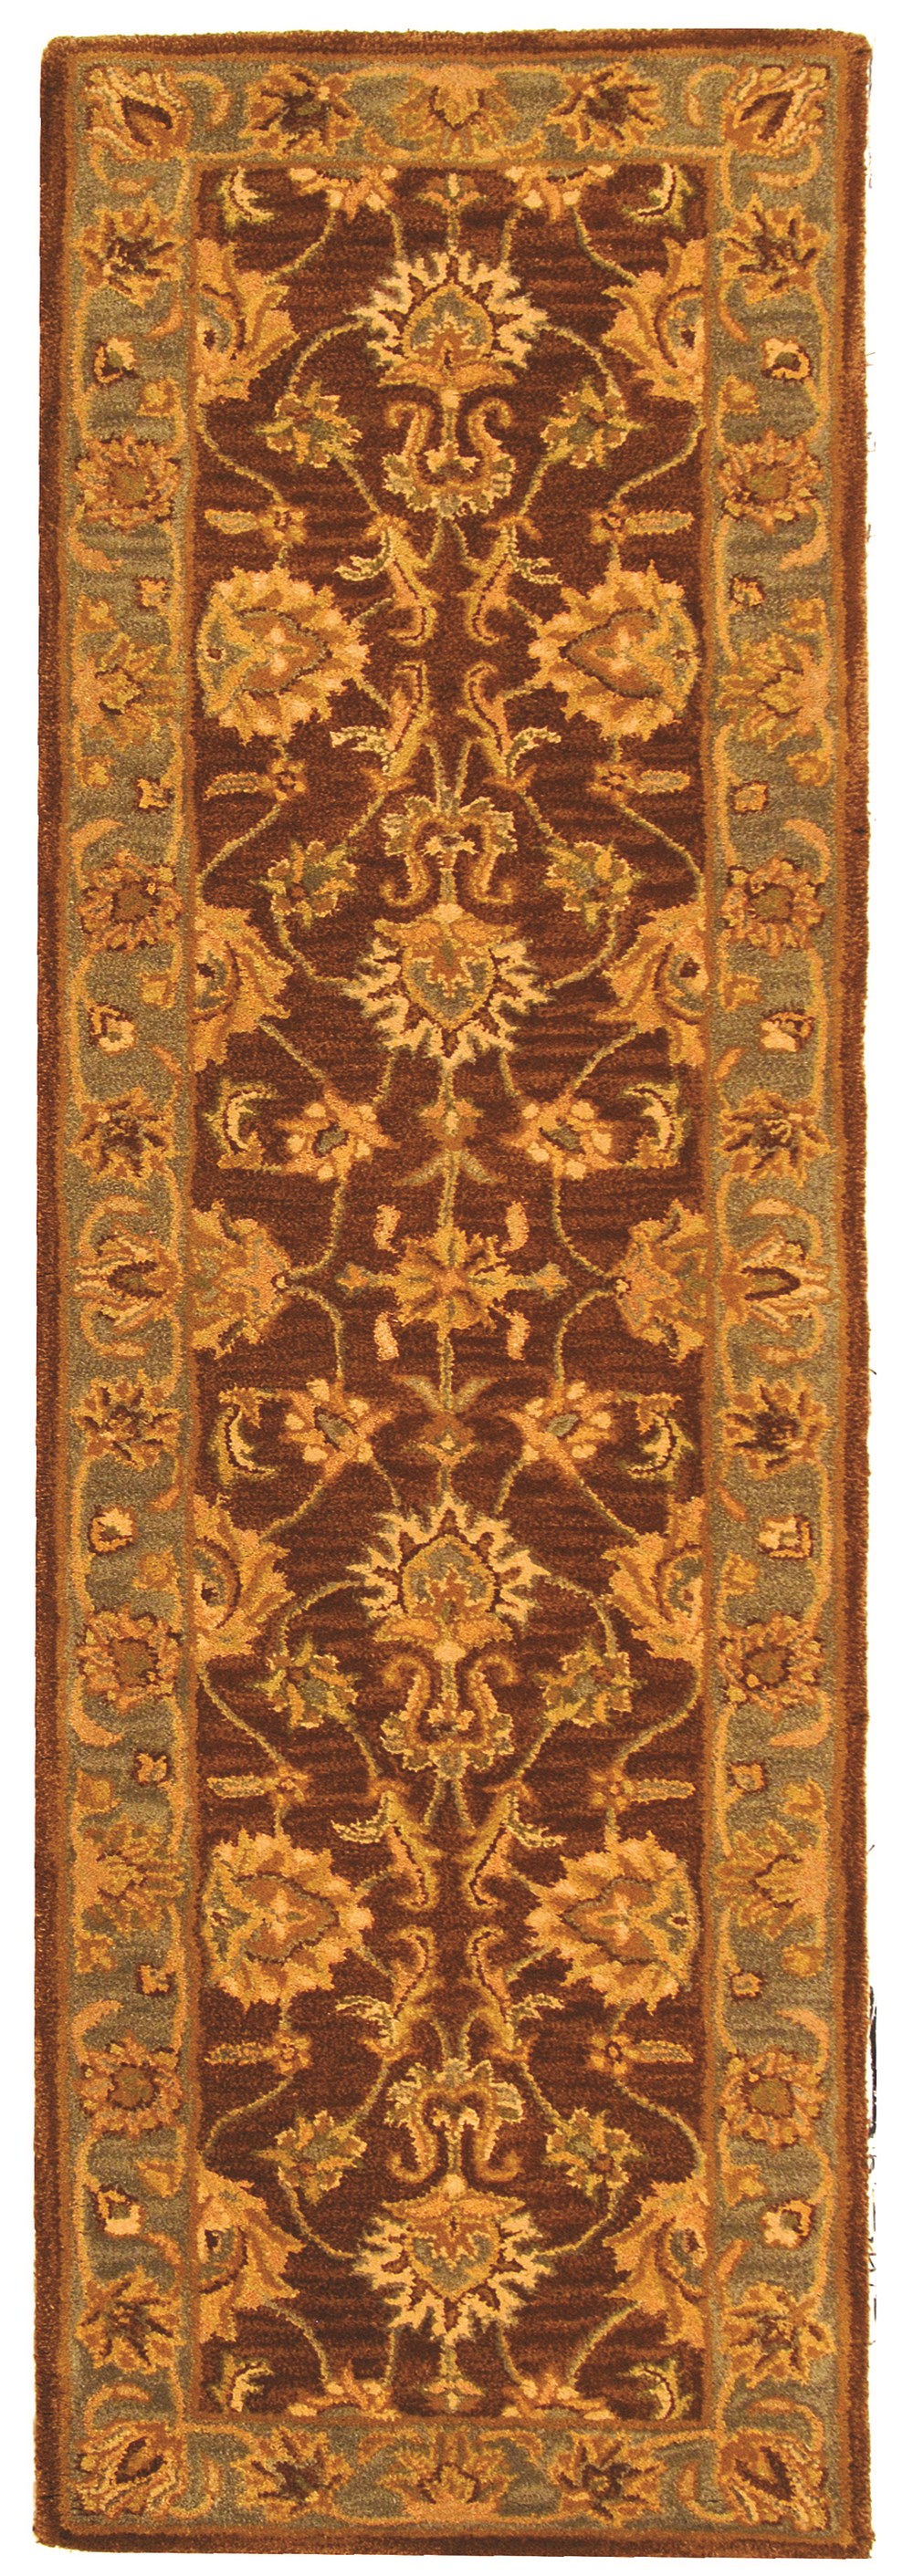 SAFAVIEH Heritage Regis Traditional Wool Runner Rug, Brown/Blue, 2'3" x 10' - image 1 of 4